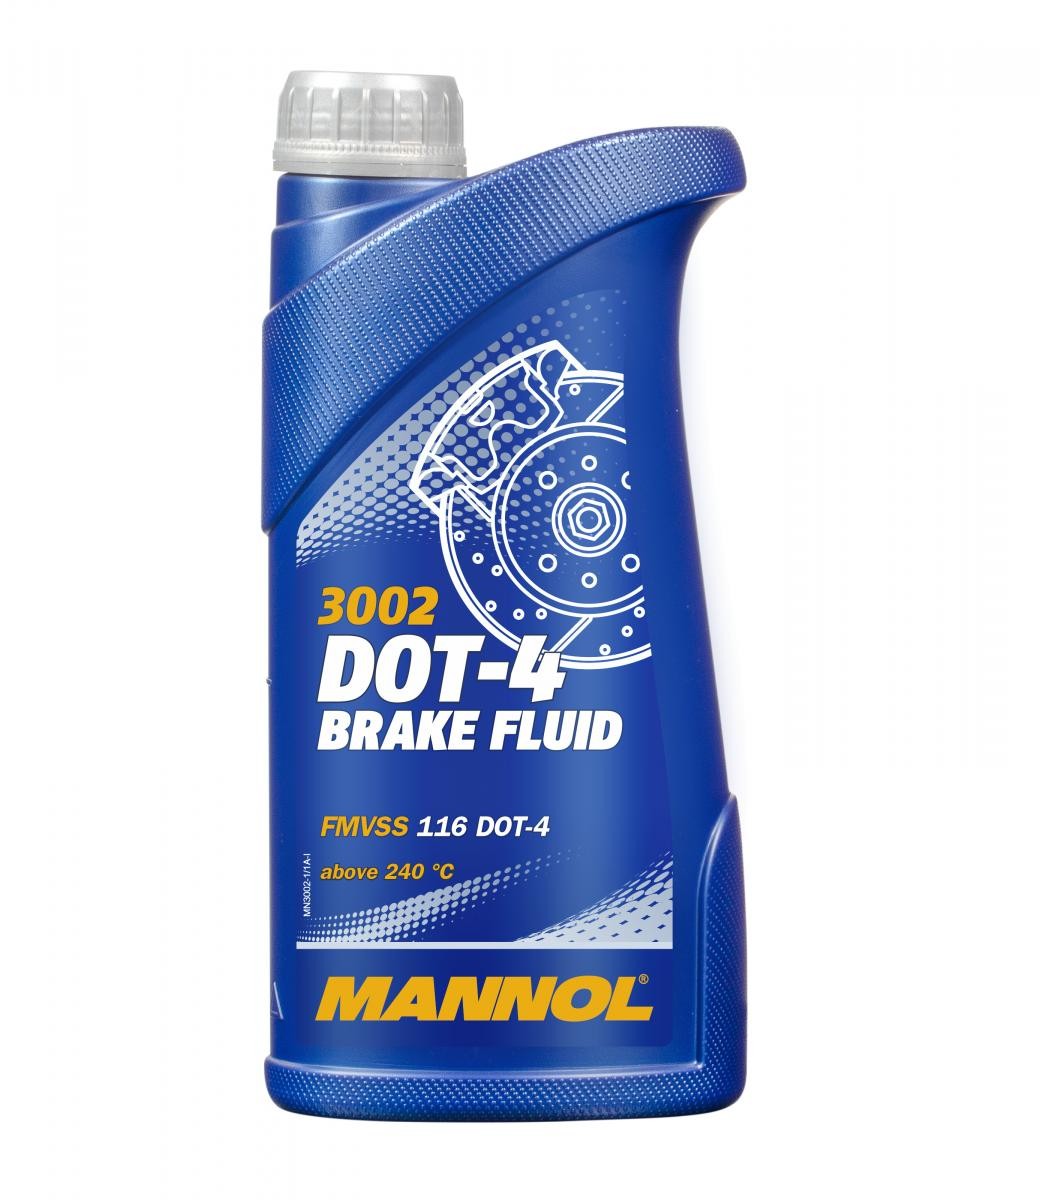 MANNOL DOT-4 BRAKE FLUID 1L Remolie MN3002-1 koop goedkoop